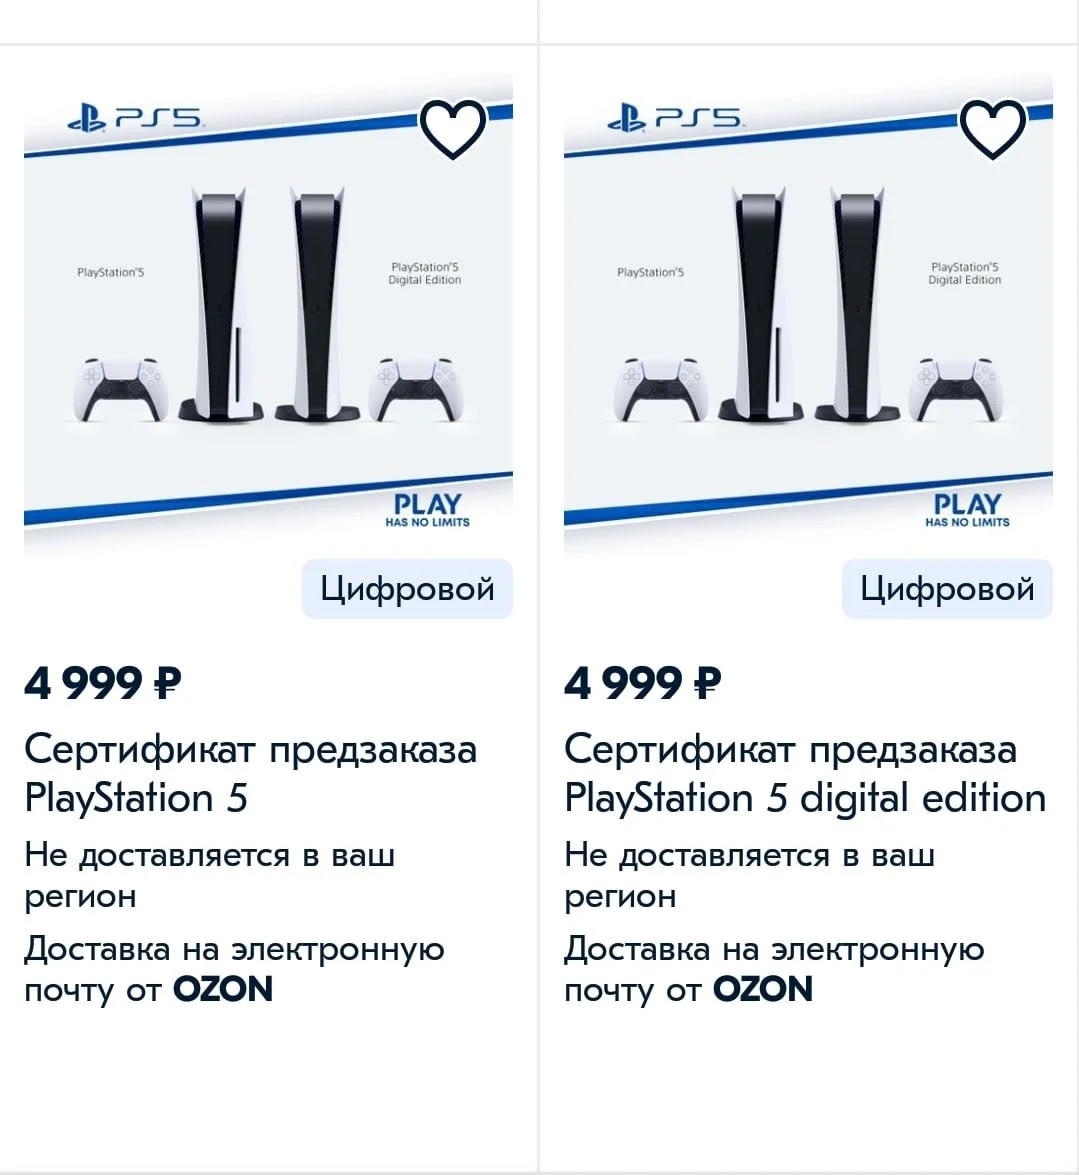 В России за оформление предзаказа PlayStation 5 потребуется 5 тысяч рублей - фото 1